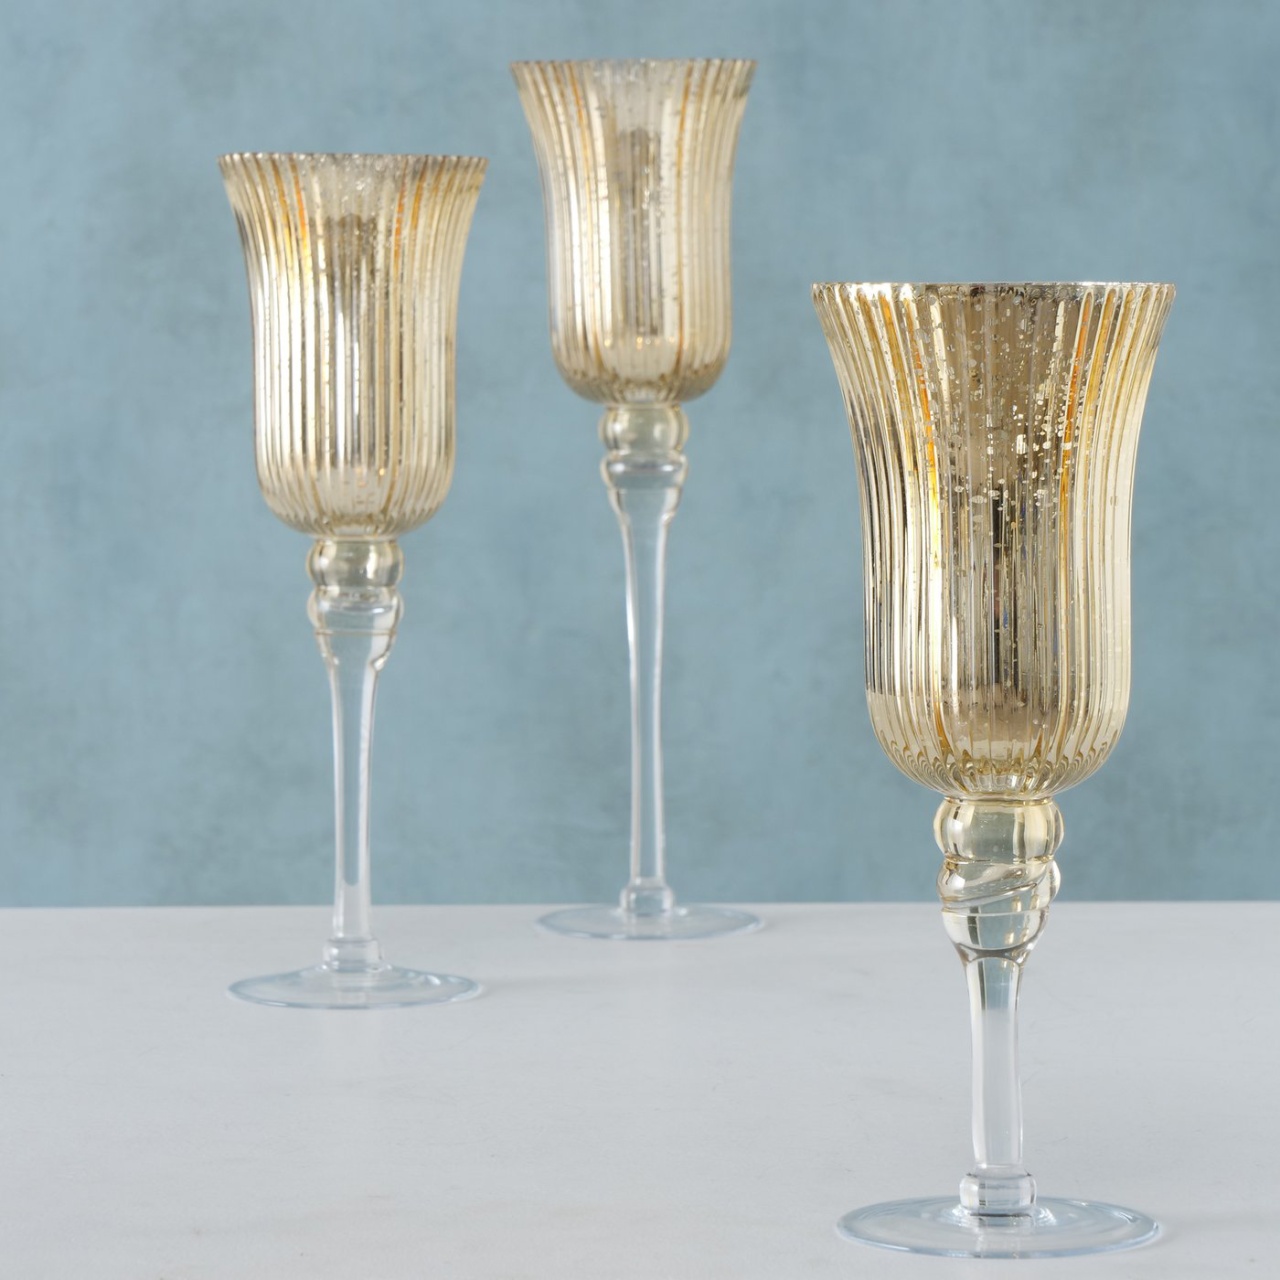 Windlicht Kelch Kerzenständer Glas lackiert golden H: 40 cm